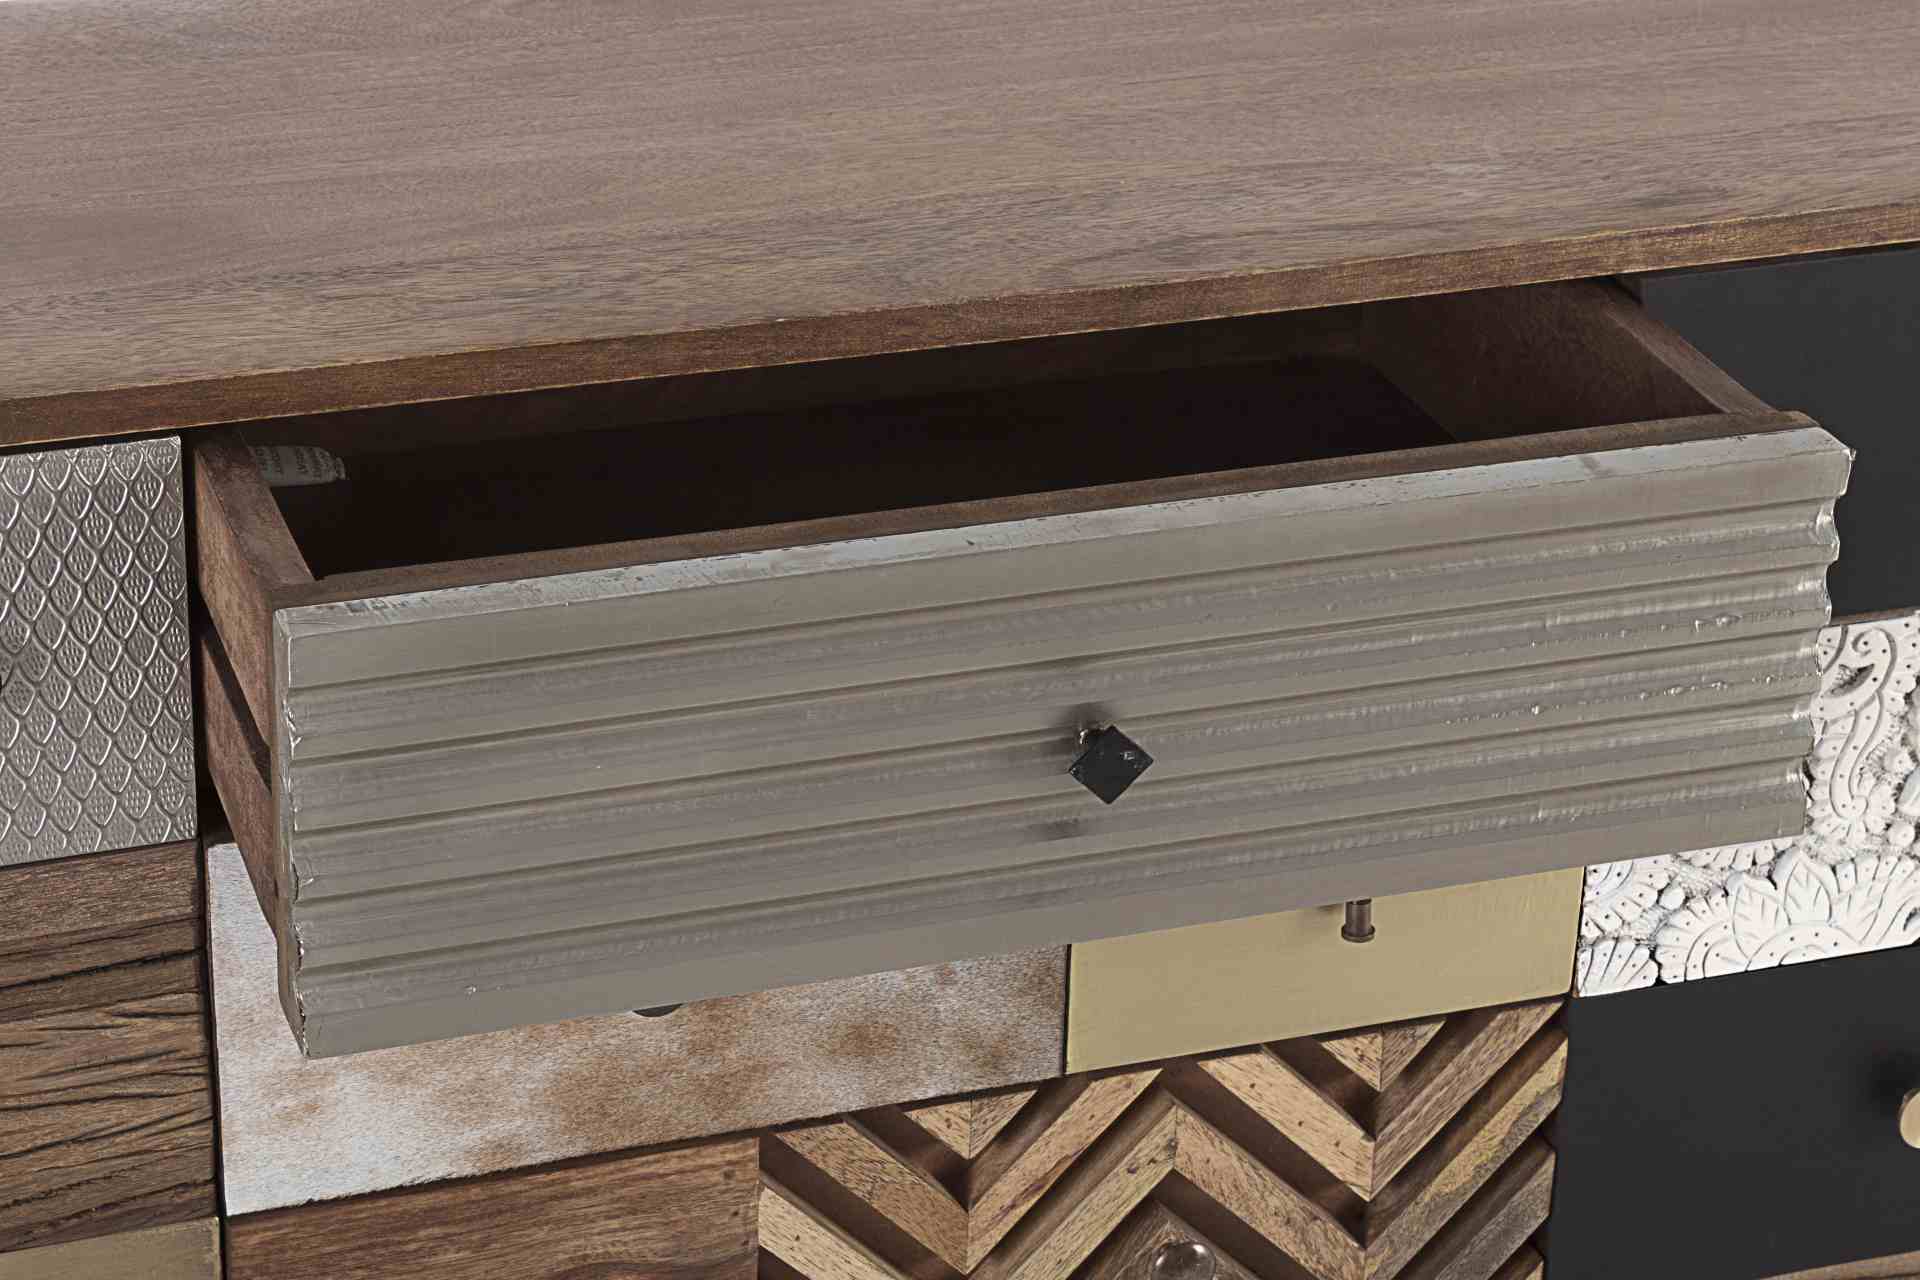 Das Sideboard Dhaval überzeugt mit seinem klassischen Design. Gefertigt wurde es aus Mango-Holz, welches einen natürlichen Farbton besitzt. Das Gestell ist auch aus Mango-Holz. Das Sideboard verfügt über zwei Türen und vier Schubladen. Die Breite beträgt 